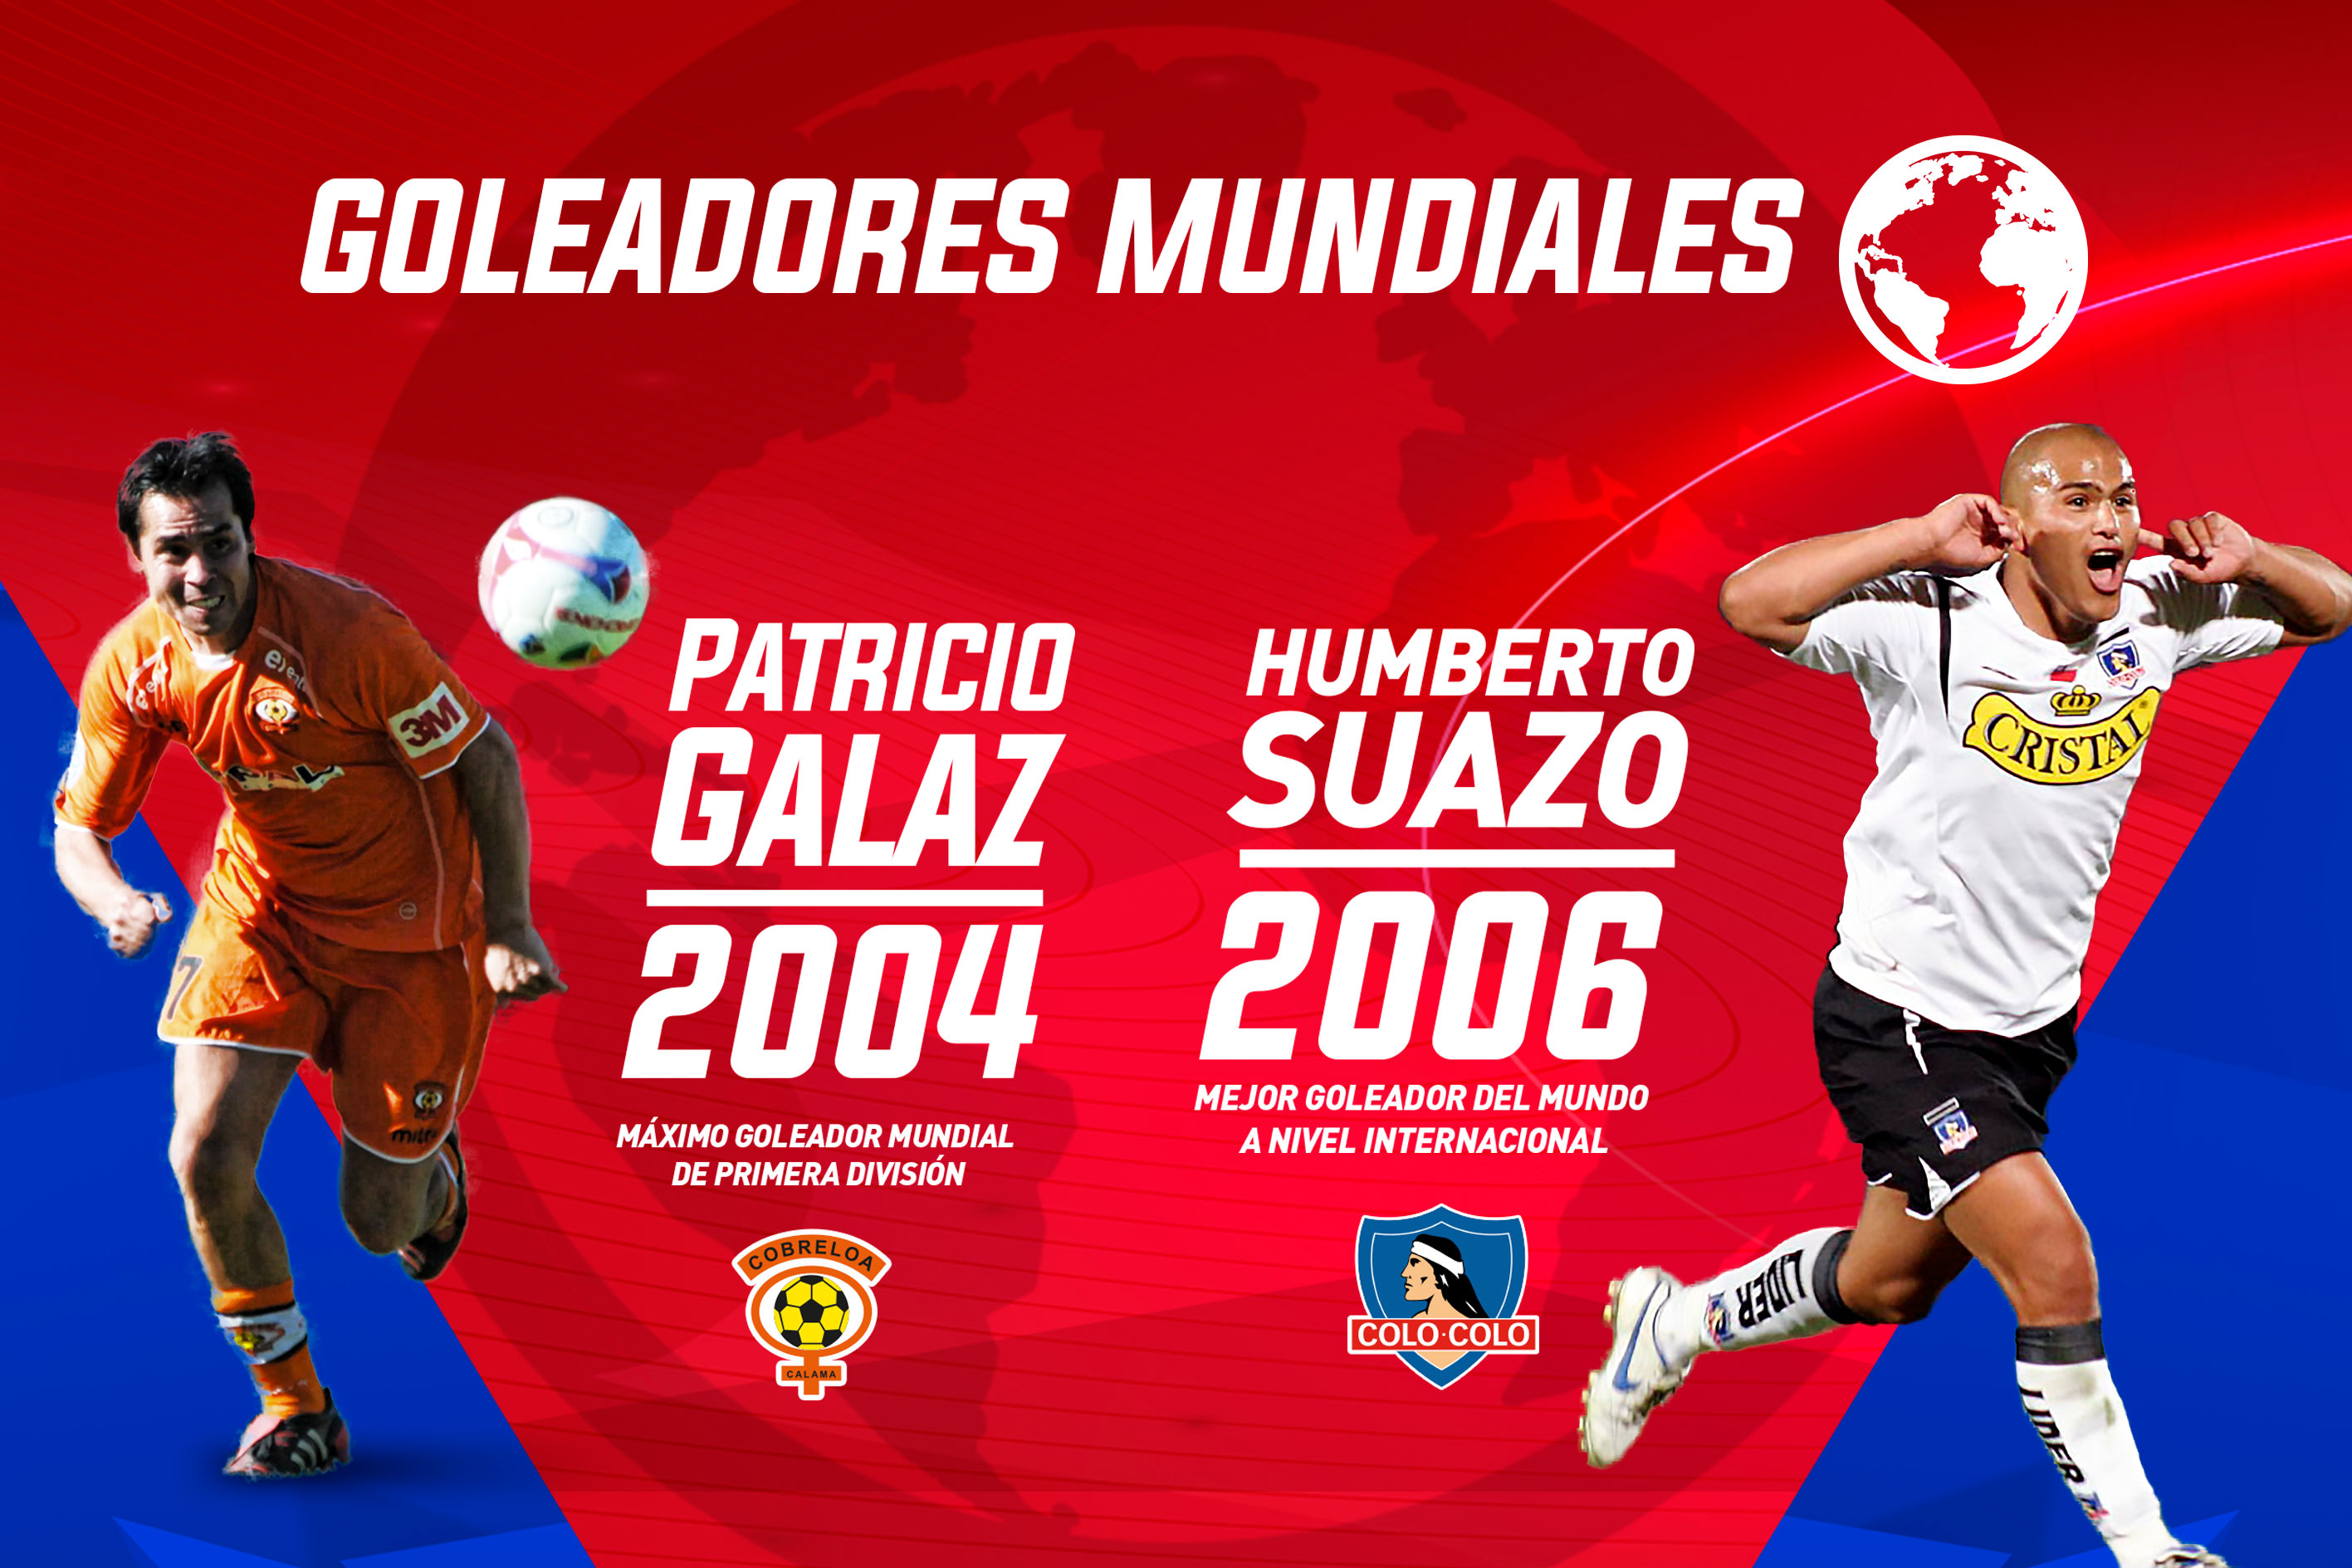 Galaz y Suazo, los goleadores mundiales del fútbol chileno